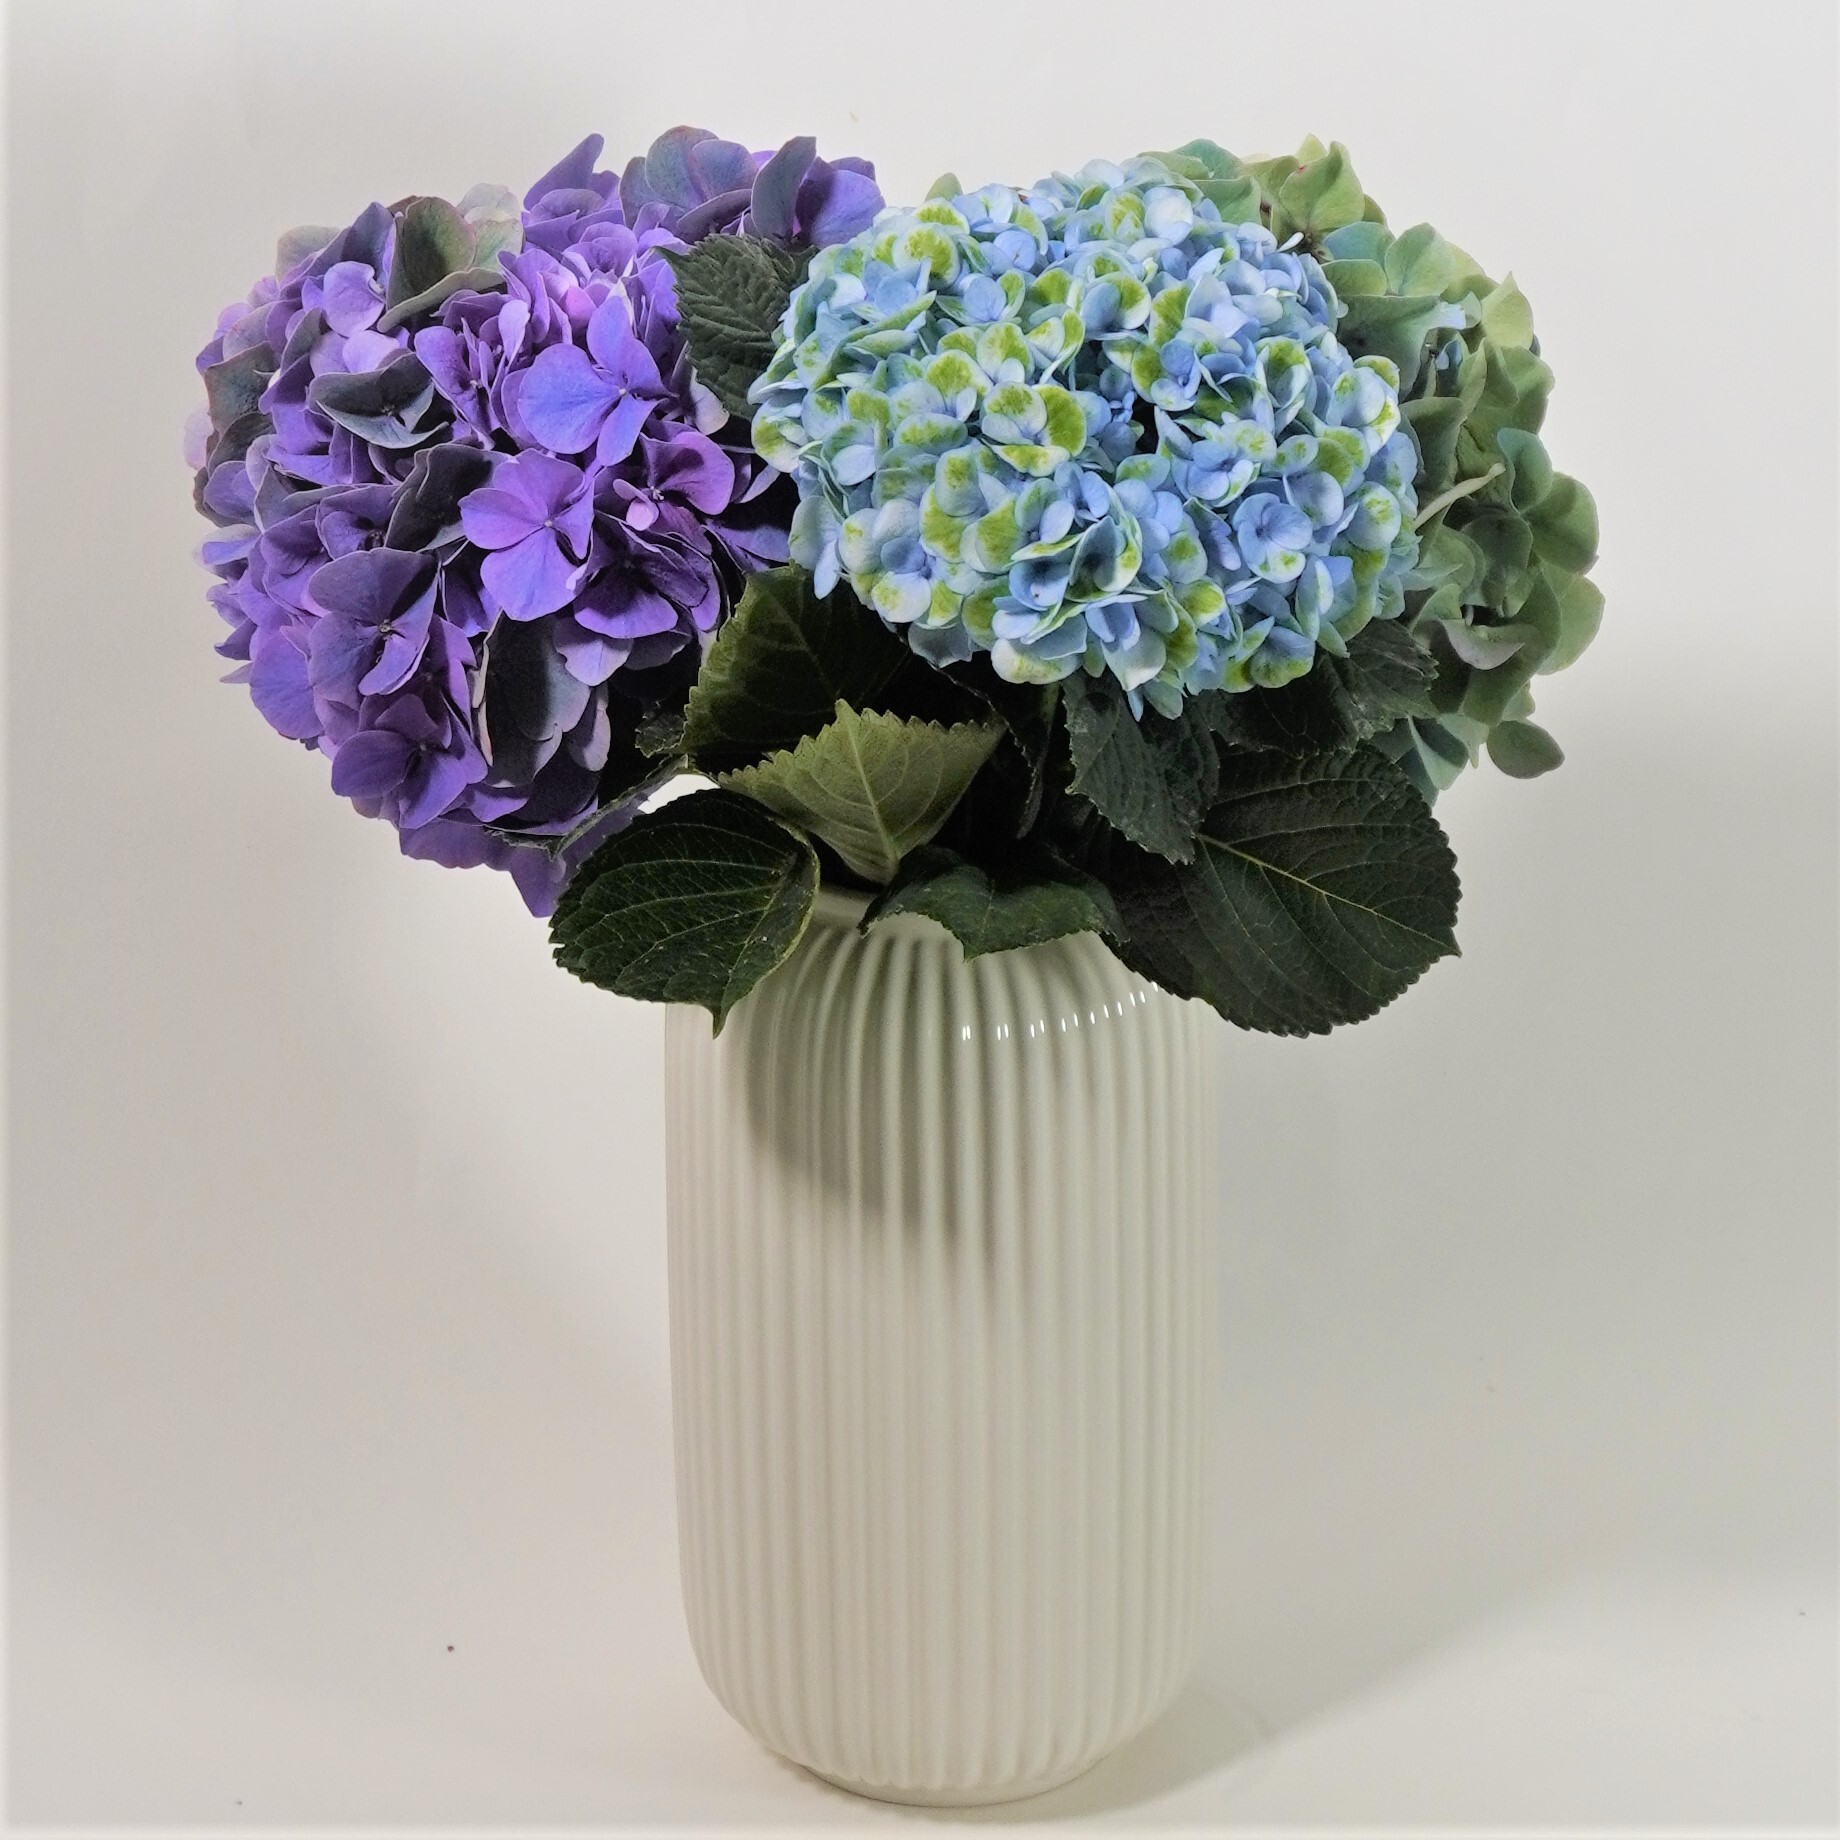 青木 良平さんから届く こだわりの紫陽花 Purple 送料込 よいはな Yoihana 最高品質のお花をお届けするネット通販